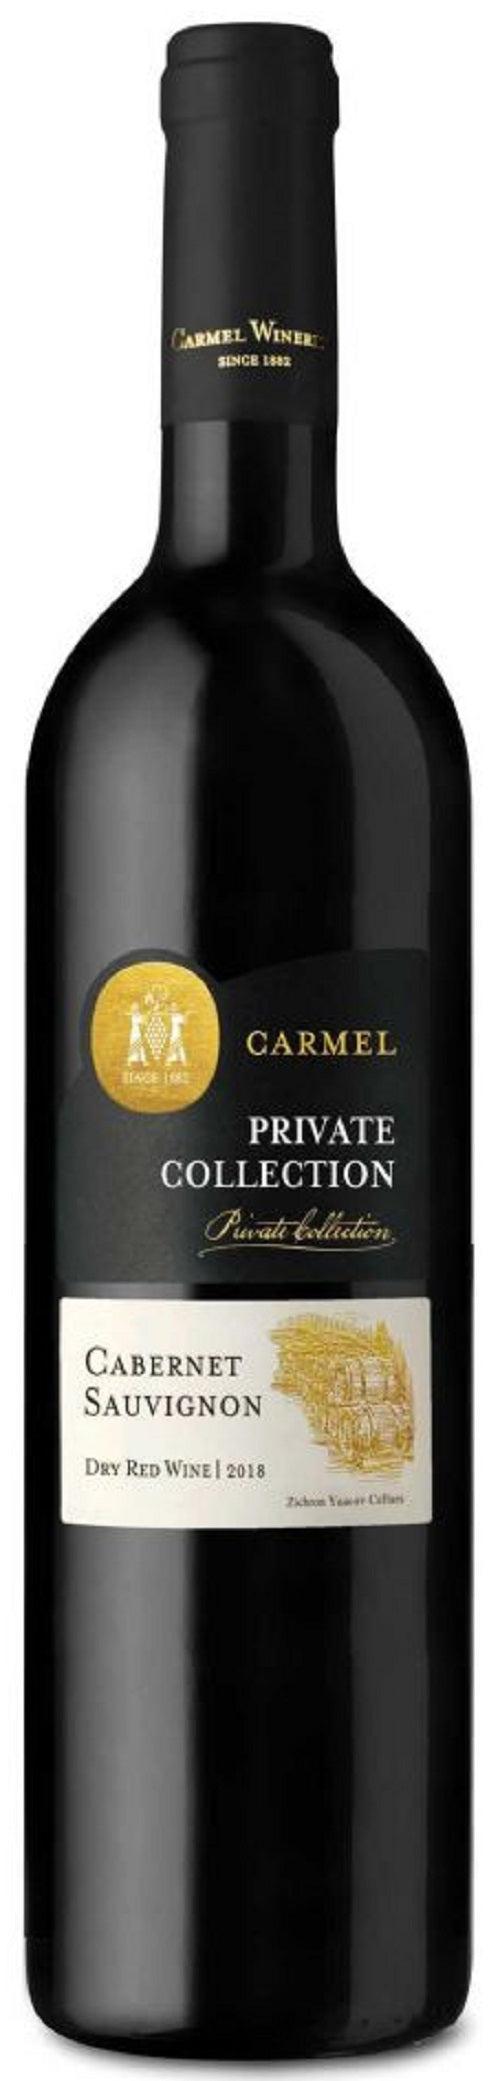 Carmel Cabernet Sauvignon Private Collection 2019